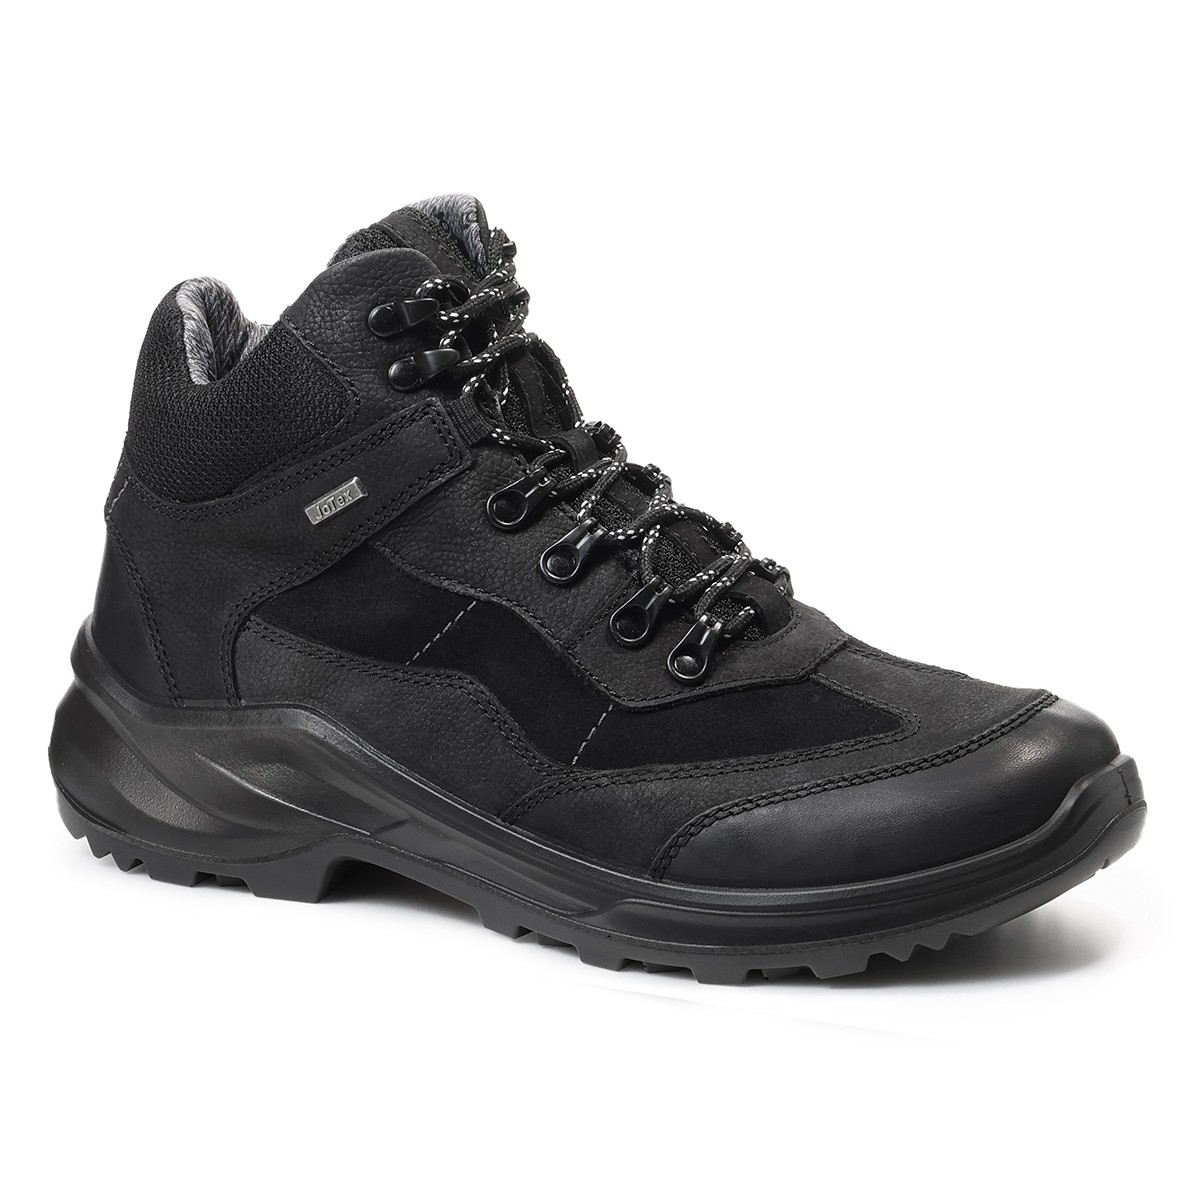 Мужские треккинговые ботинки Trekking, Jomos, черные ботинки мужские jomos atlanta черные